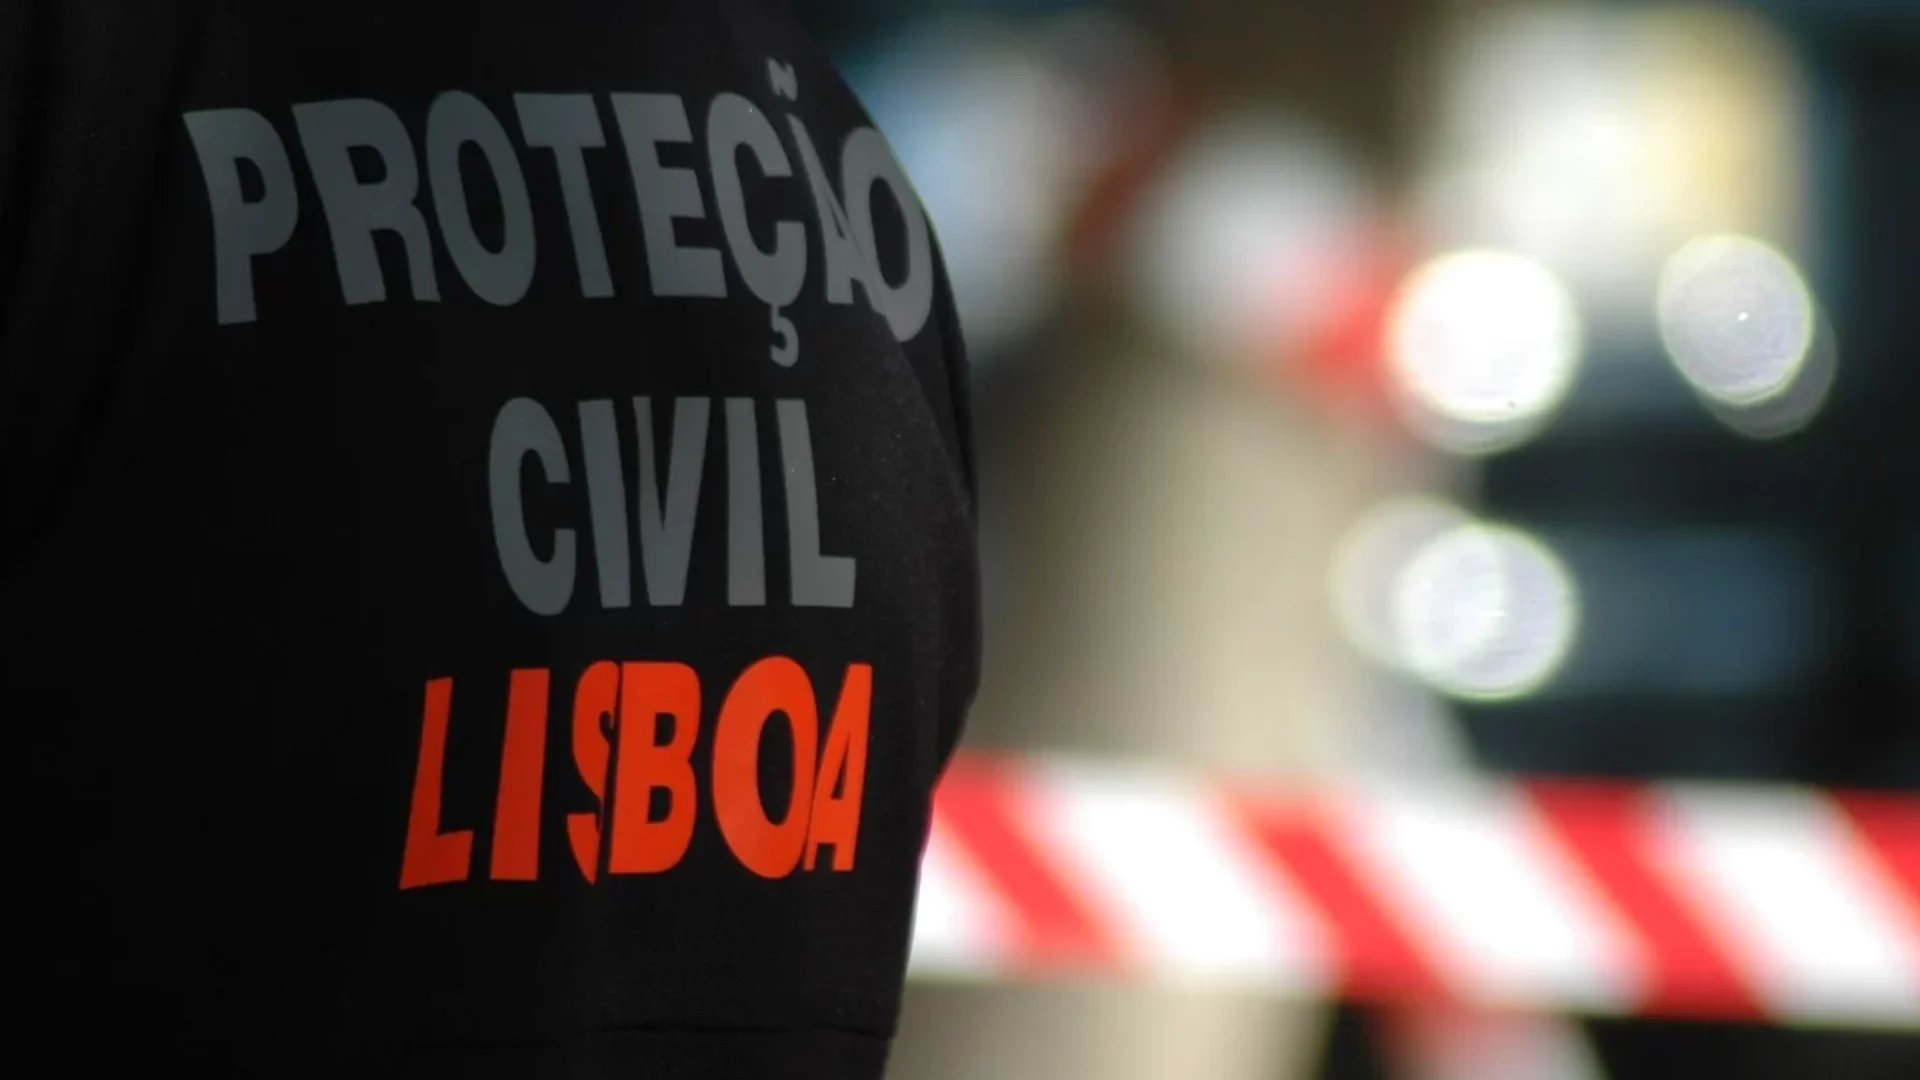 Proteção Civil de Lisboa | CML 